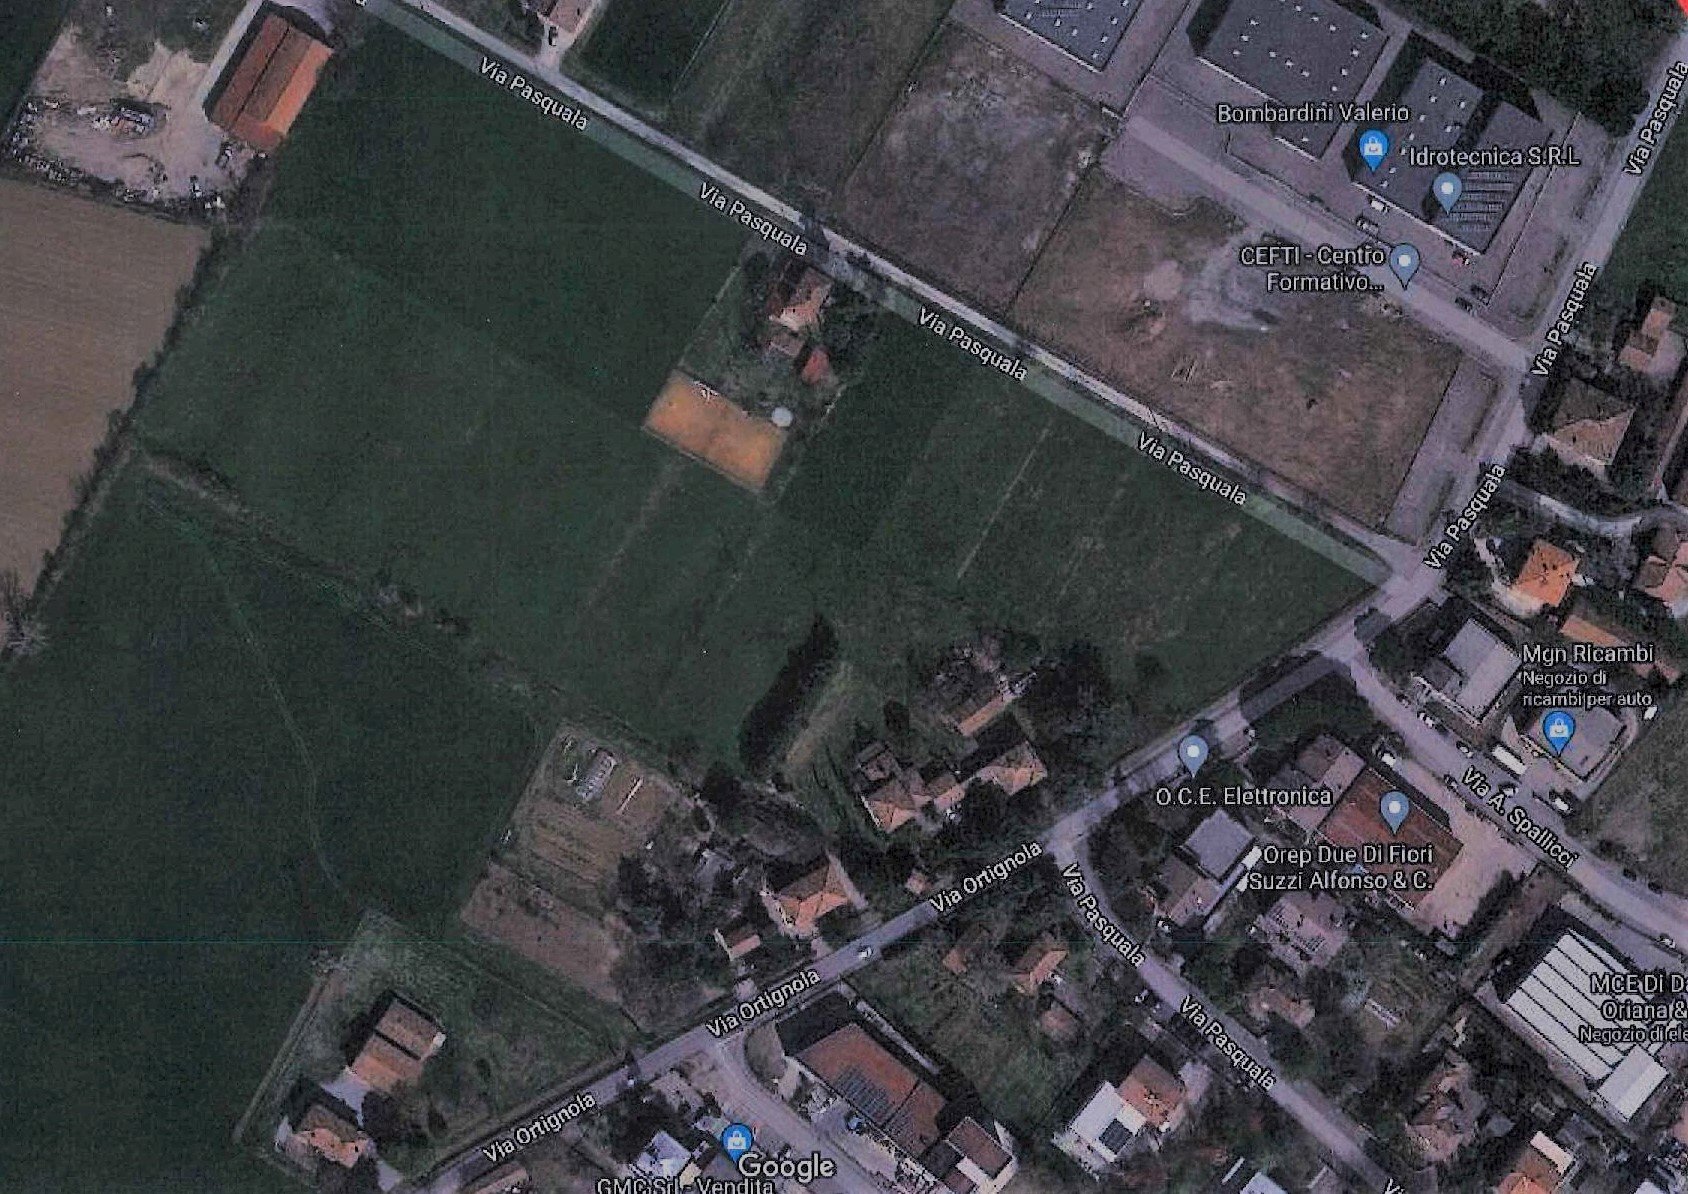 Terreno Agricolo in vendita a Imola, 1 locali, prezzo € 220.000 | CambioCasa.it